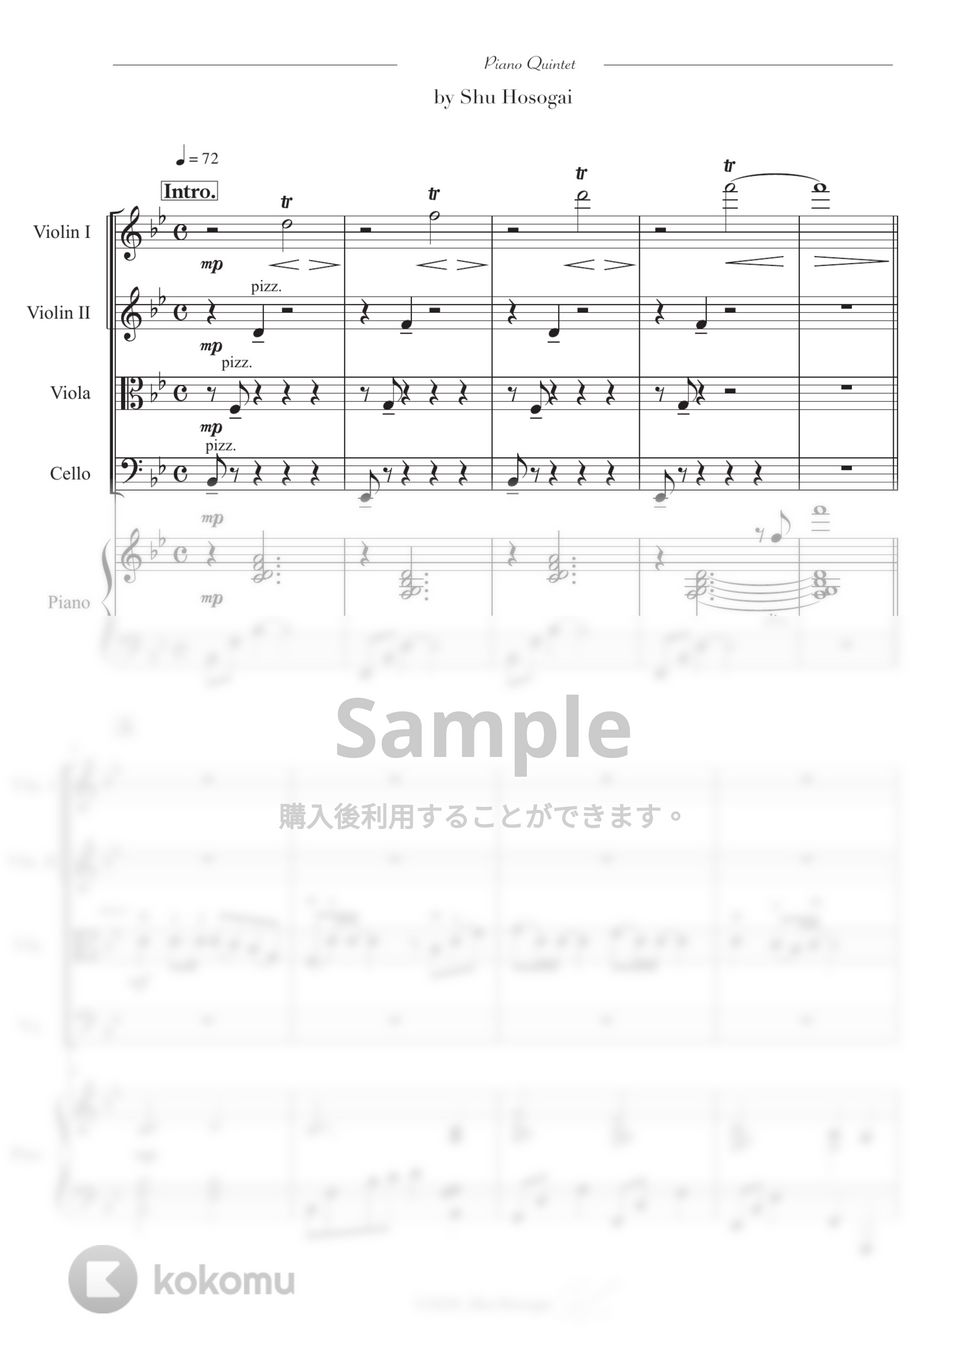 中島みゆき - 糸 (ピアノクインテット / ピアノ５重奏の豪華アレンジ) by 細貝 柊